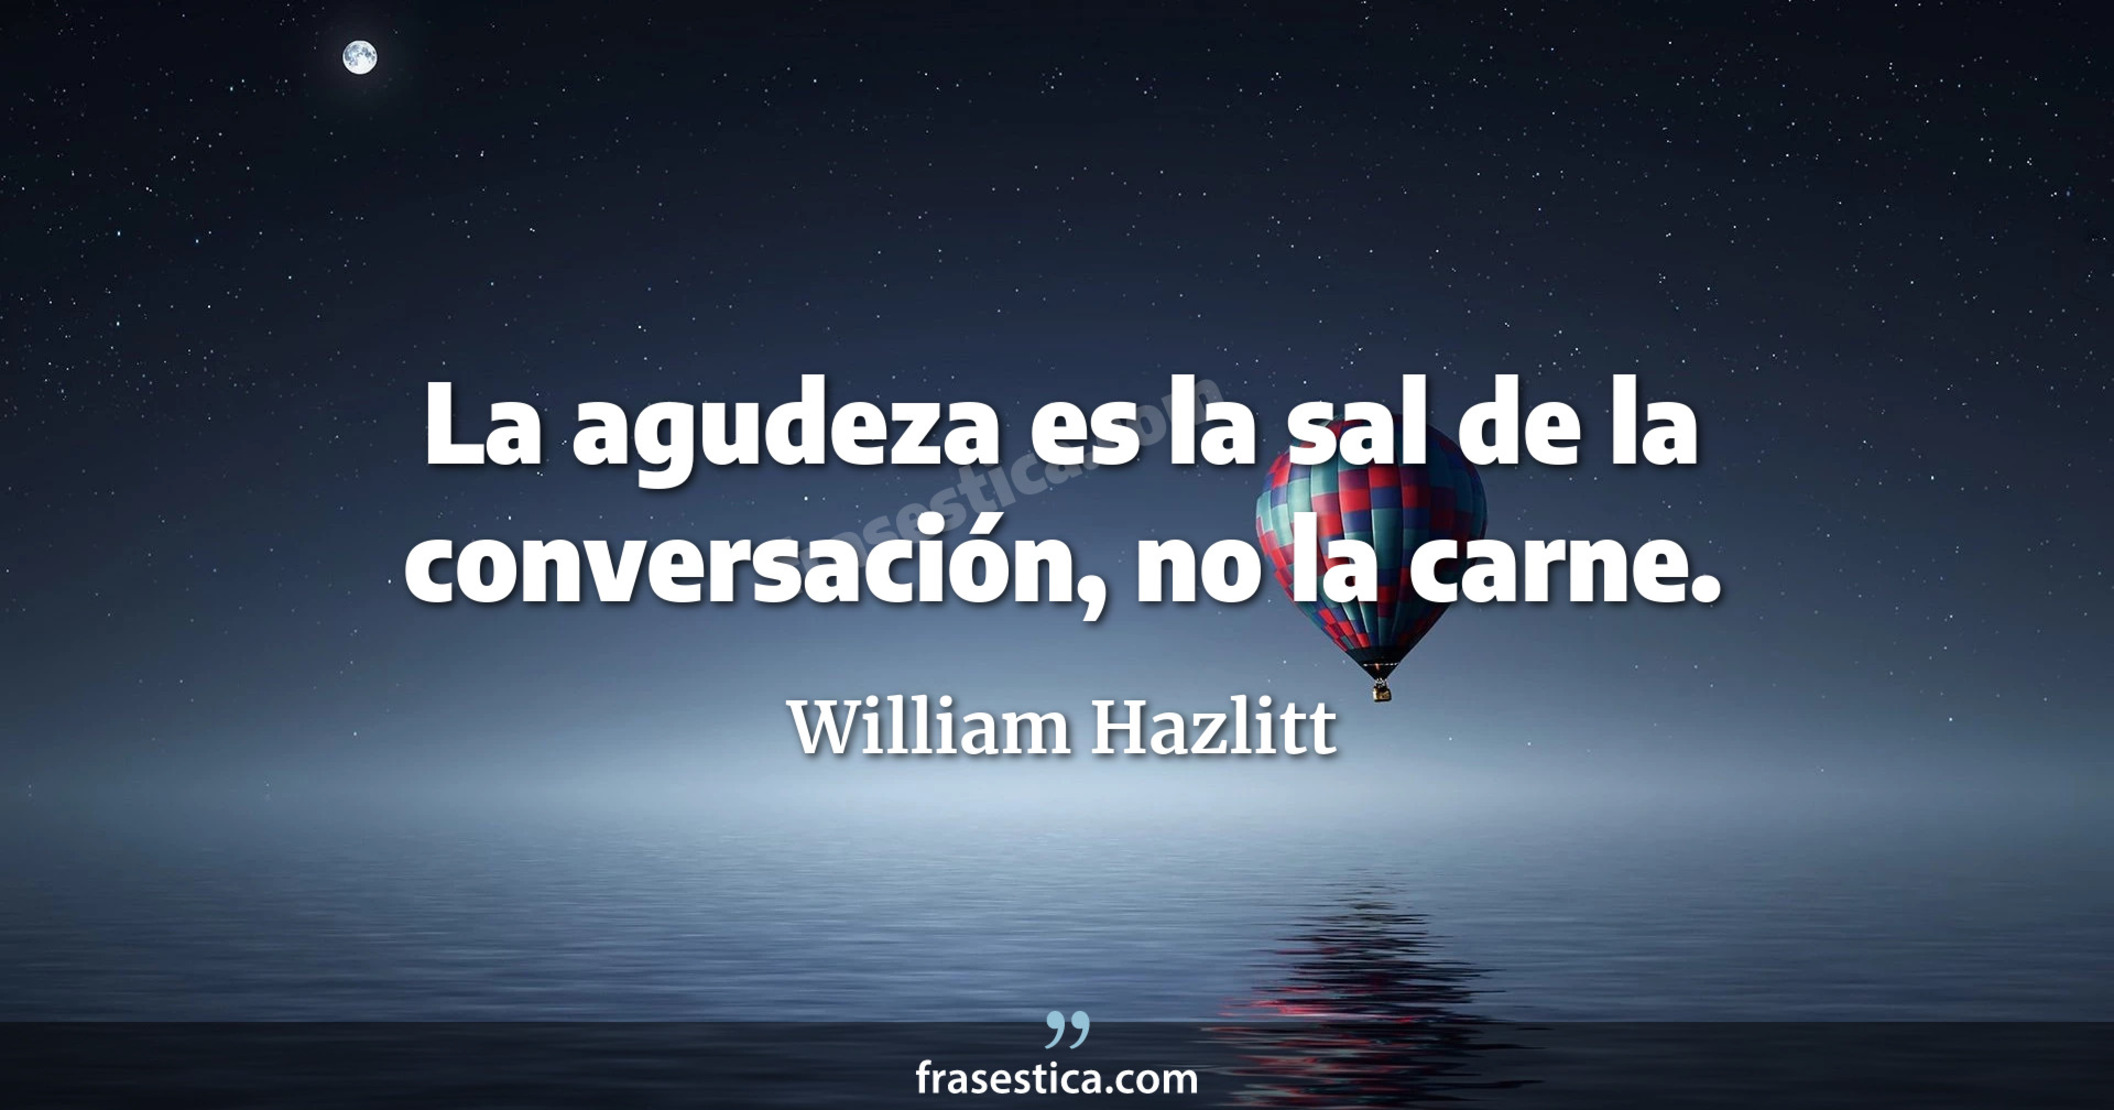 La agudeza es la sal de la conversación, no la carne. - William Hazlitt